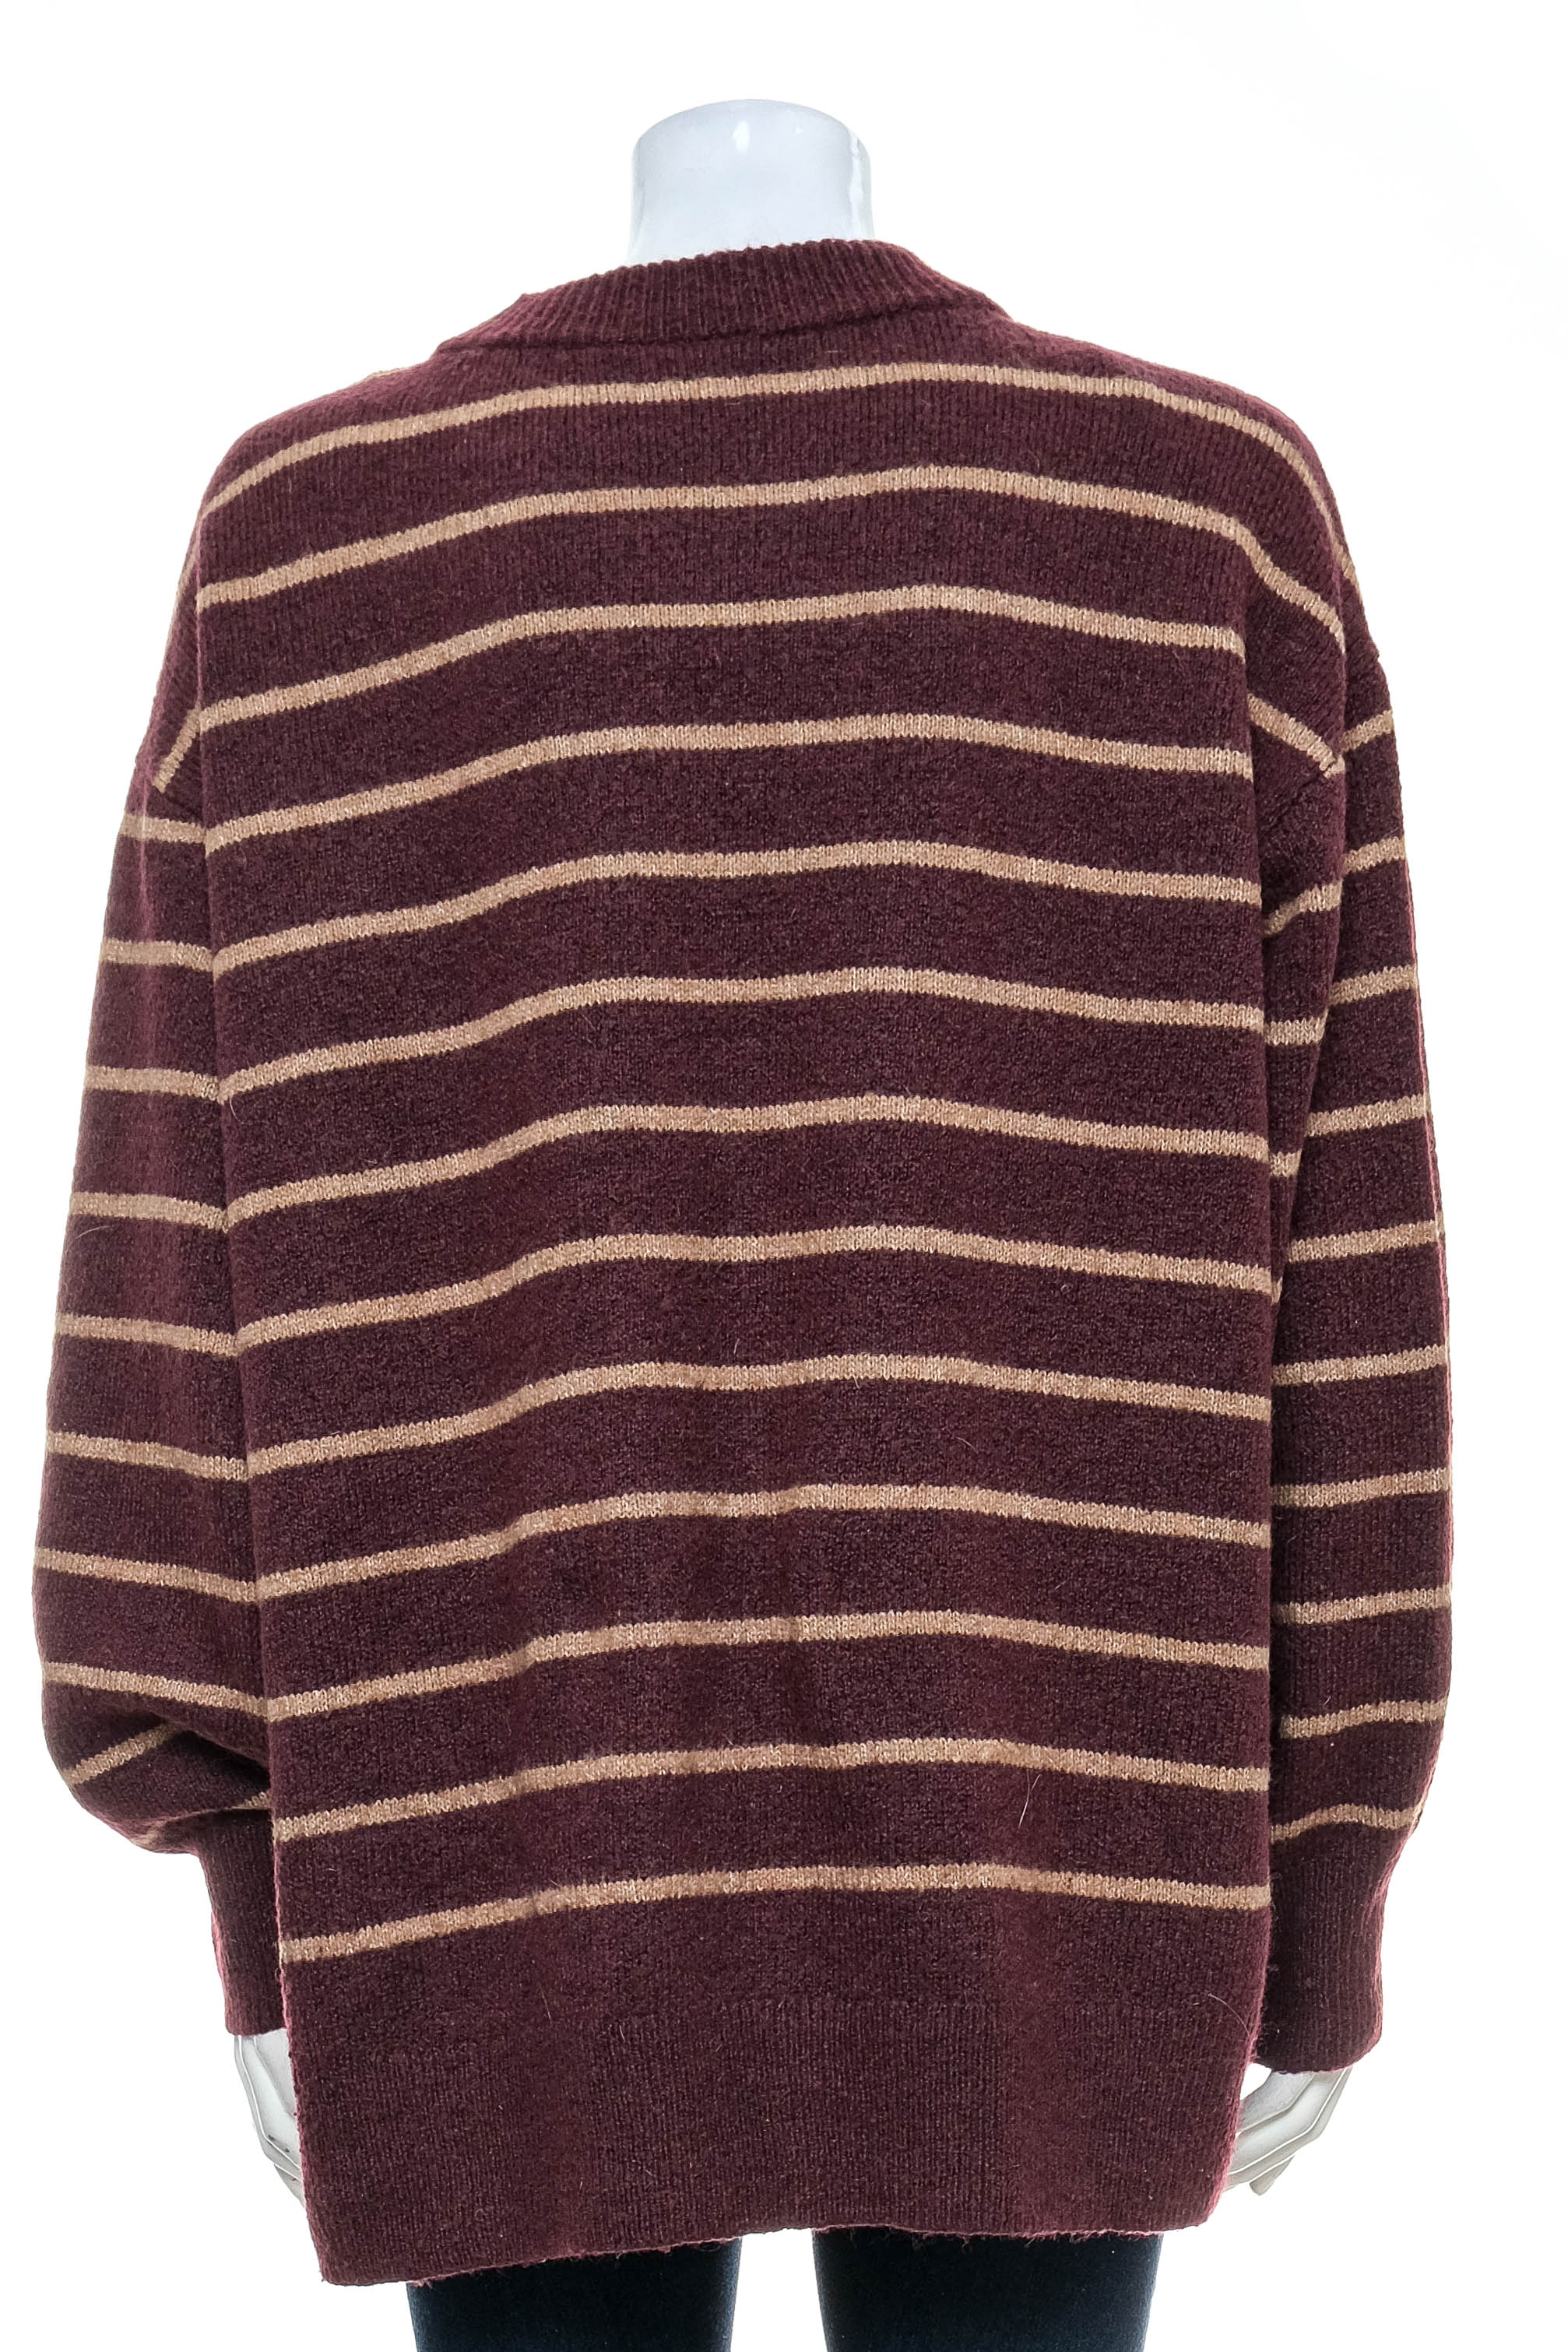 Women's sweater - Yessica - 1